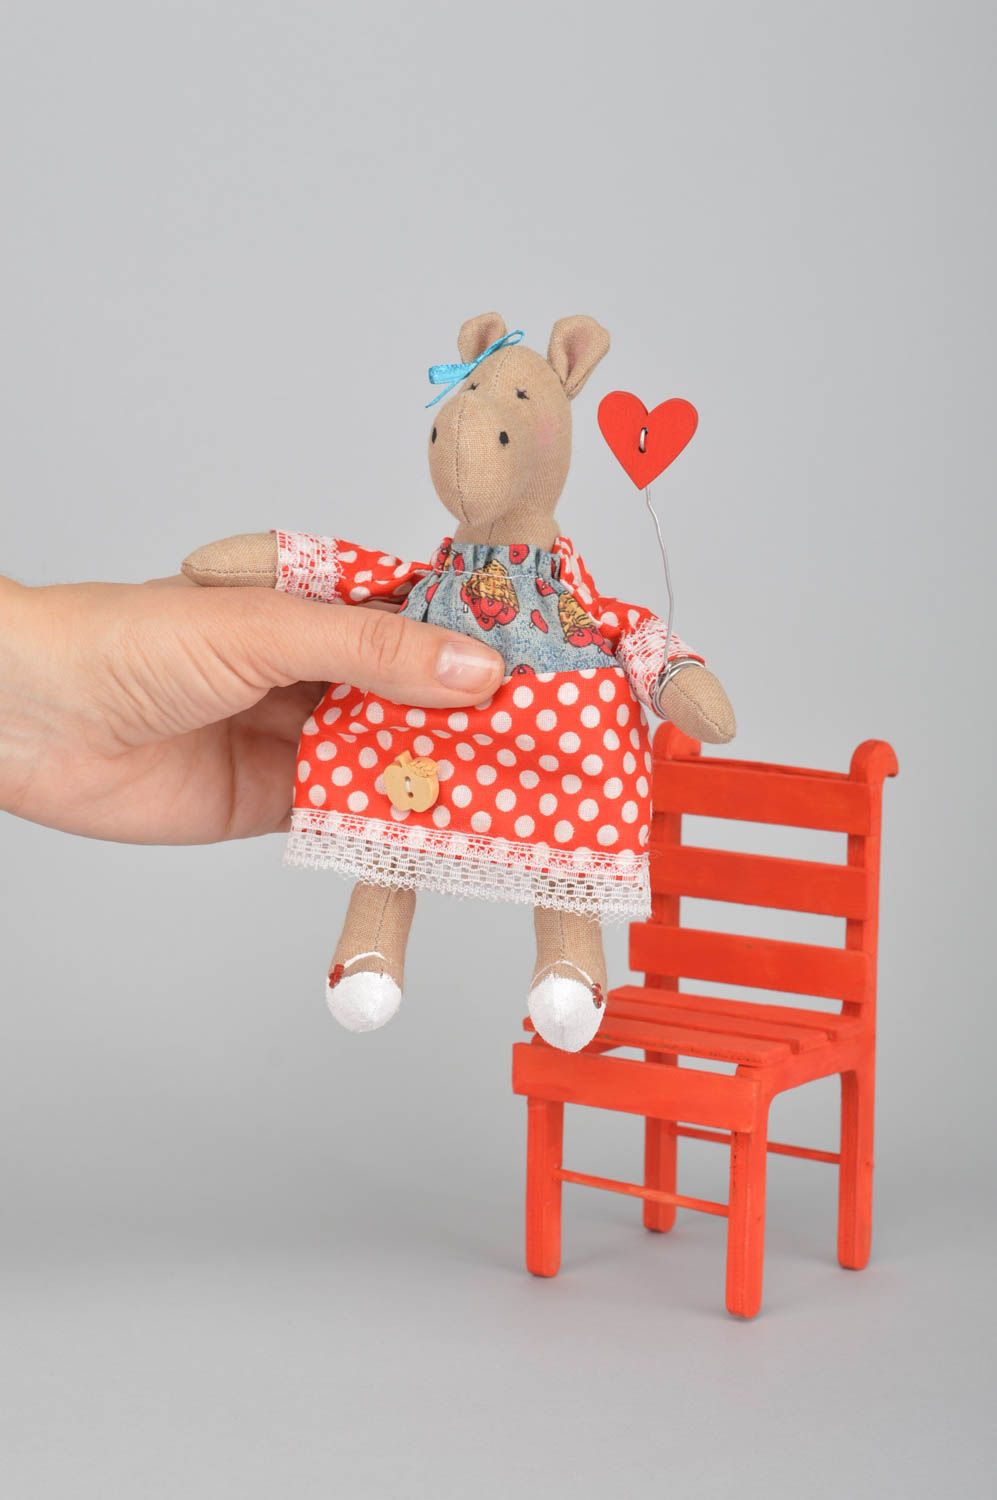 Интерьерная игрушка из хлопка ручной работы Бегемотик в платье на красном стуле фото 5